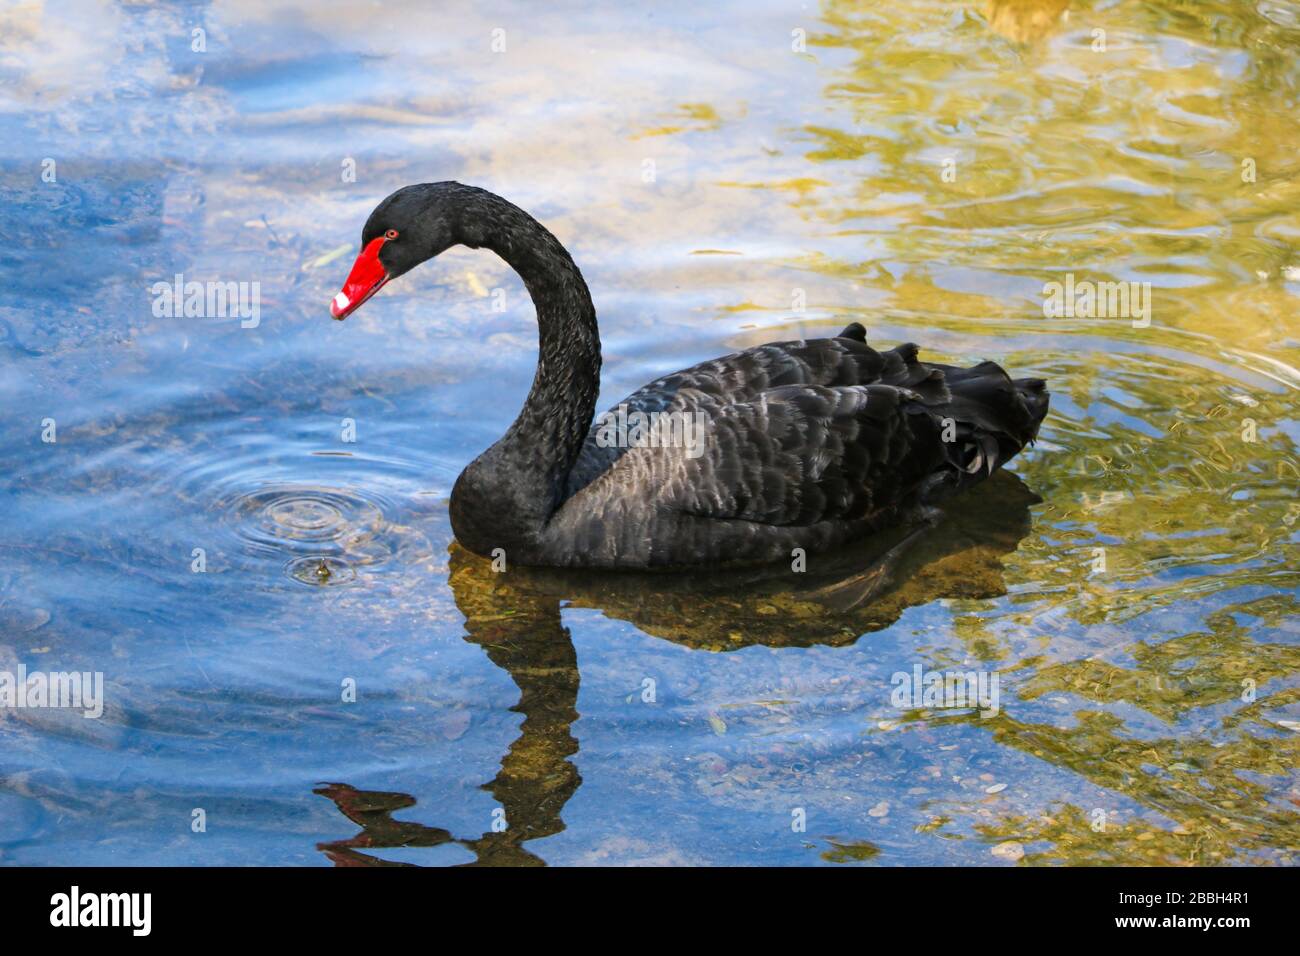 Un bel cigno nero nuota in uno stagno. Un becco rosso cigno Foto Stock